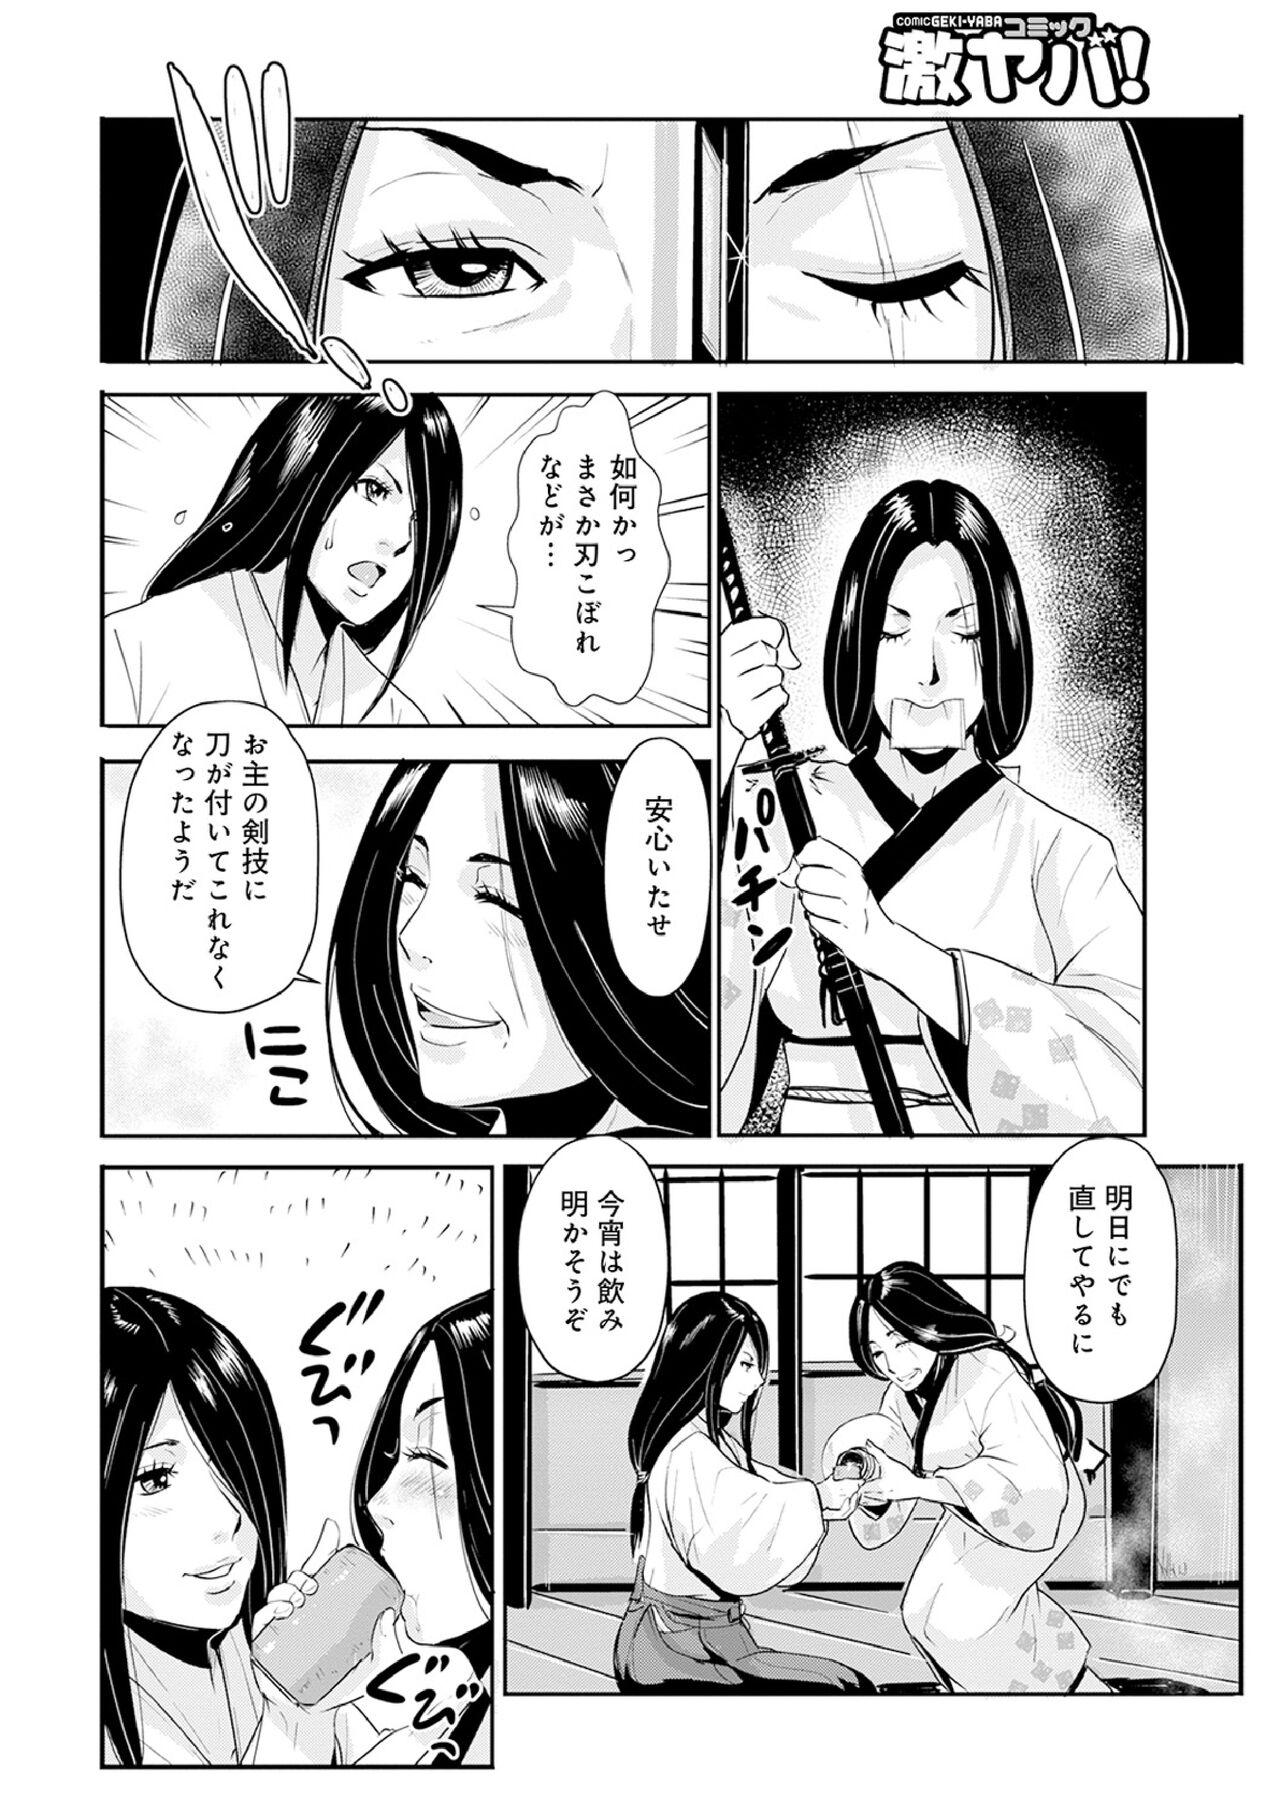 Chica Harami samurai 12 Couple Porn - Page 10